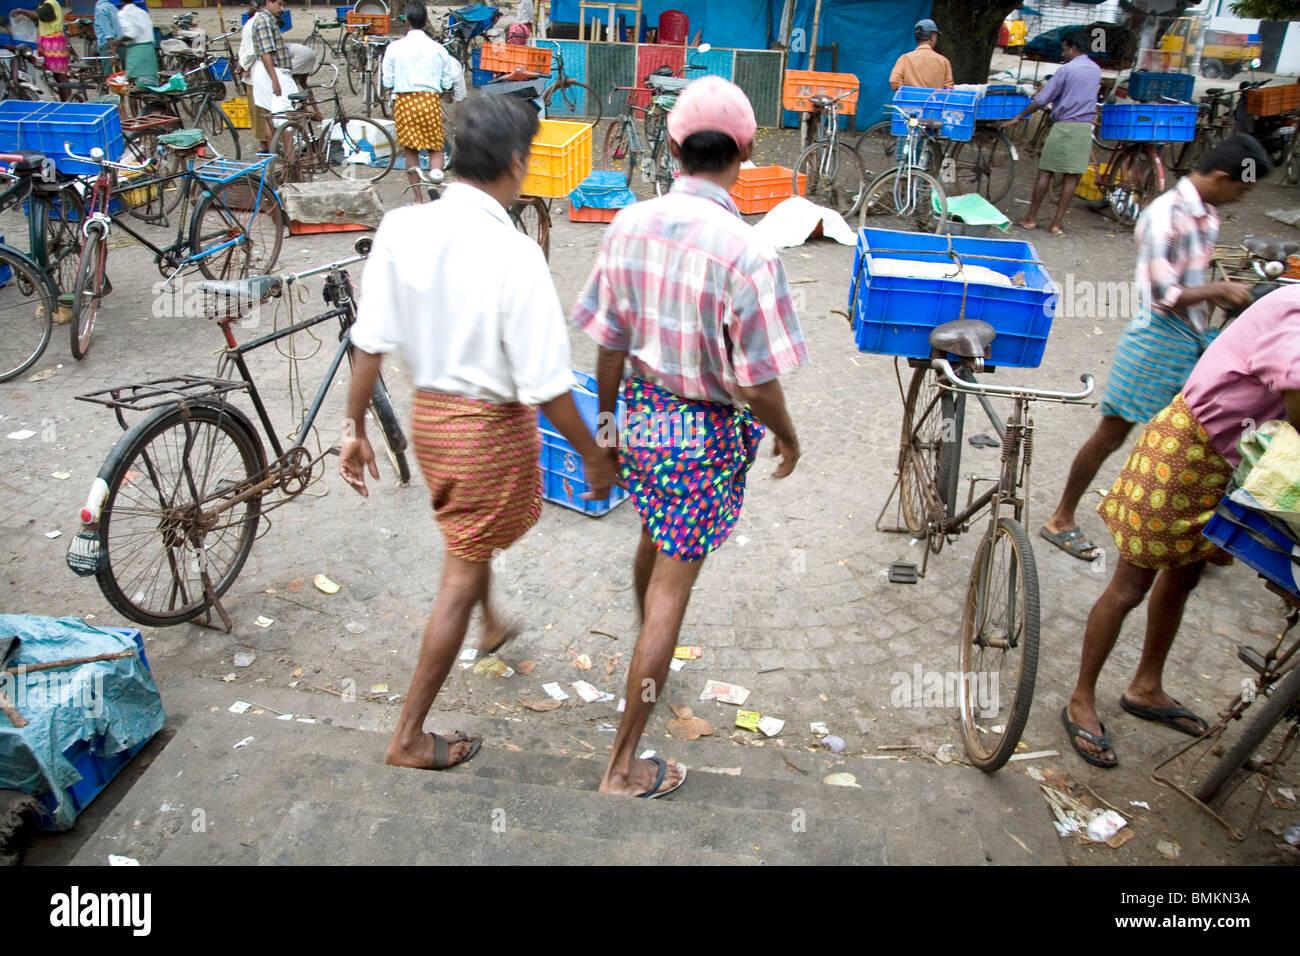 Männer zu Fuß und zwei Wheelers Fahrrad geparkt in der Nähe von Fischmarkt; Cochin jetzt Kochi; Kerala; Indien Stockfoto